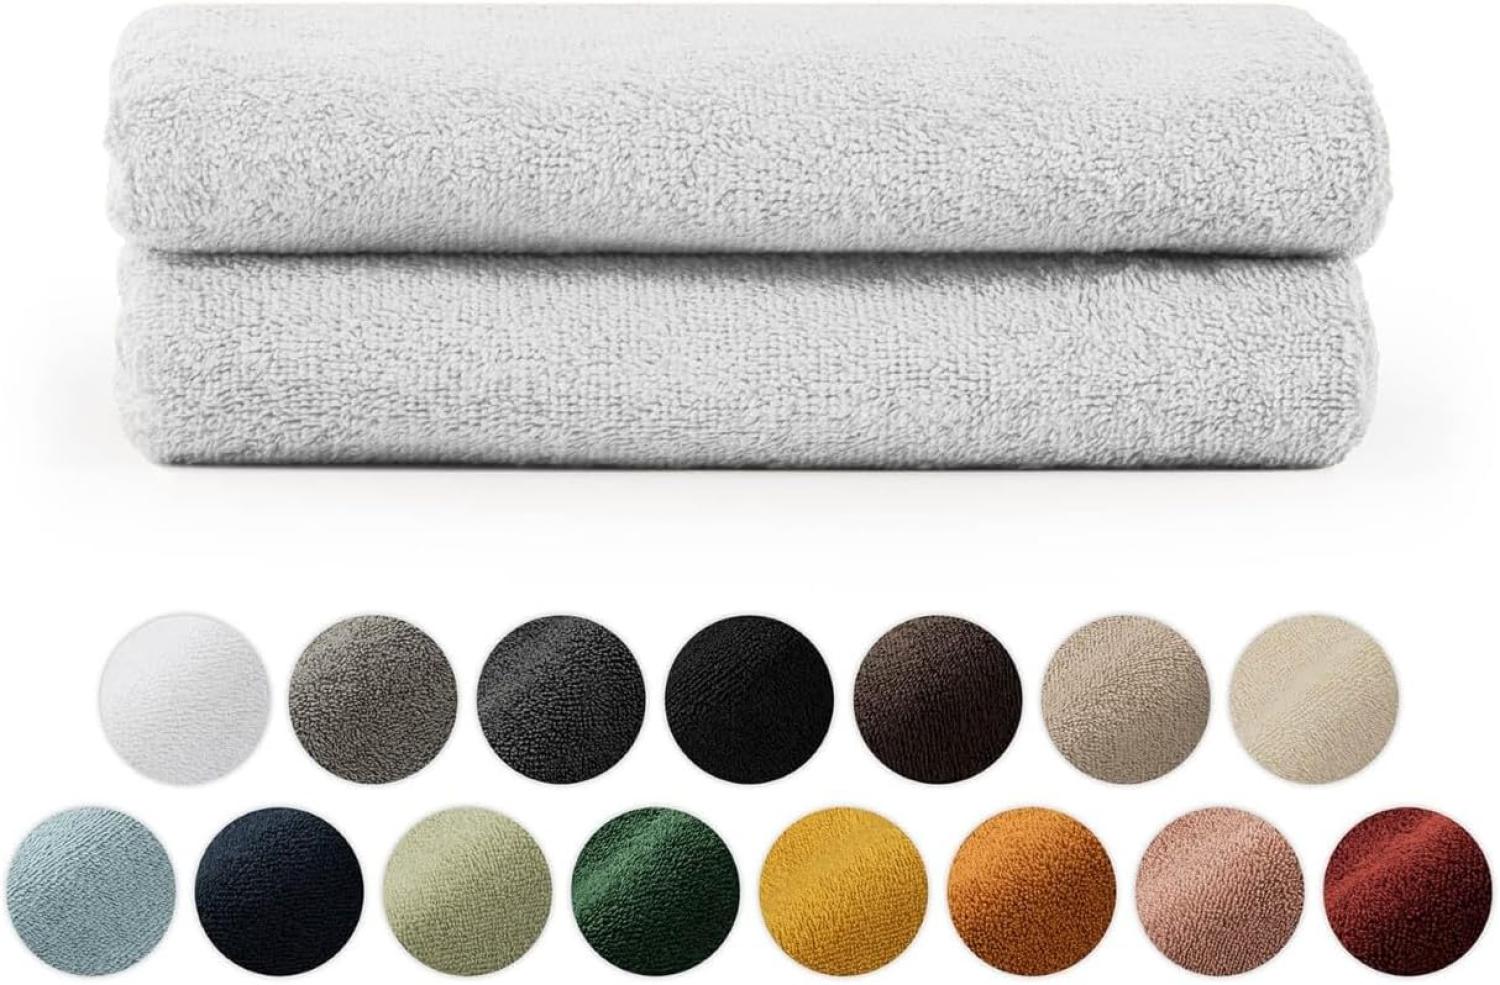 Blumtal Premium Frottier Handtücher Set mit Aufhängschlaufen - Baumwolle Oeko-TEX Zertifiziert, weich, saugstark - 2X Handtuch (50x100 cm), Weiß Bild 1